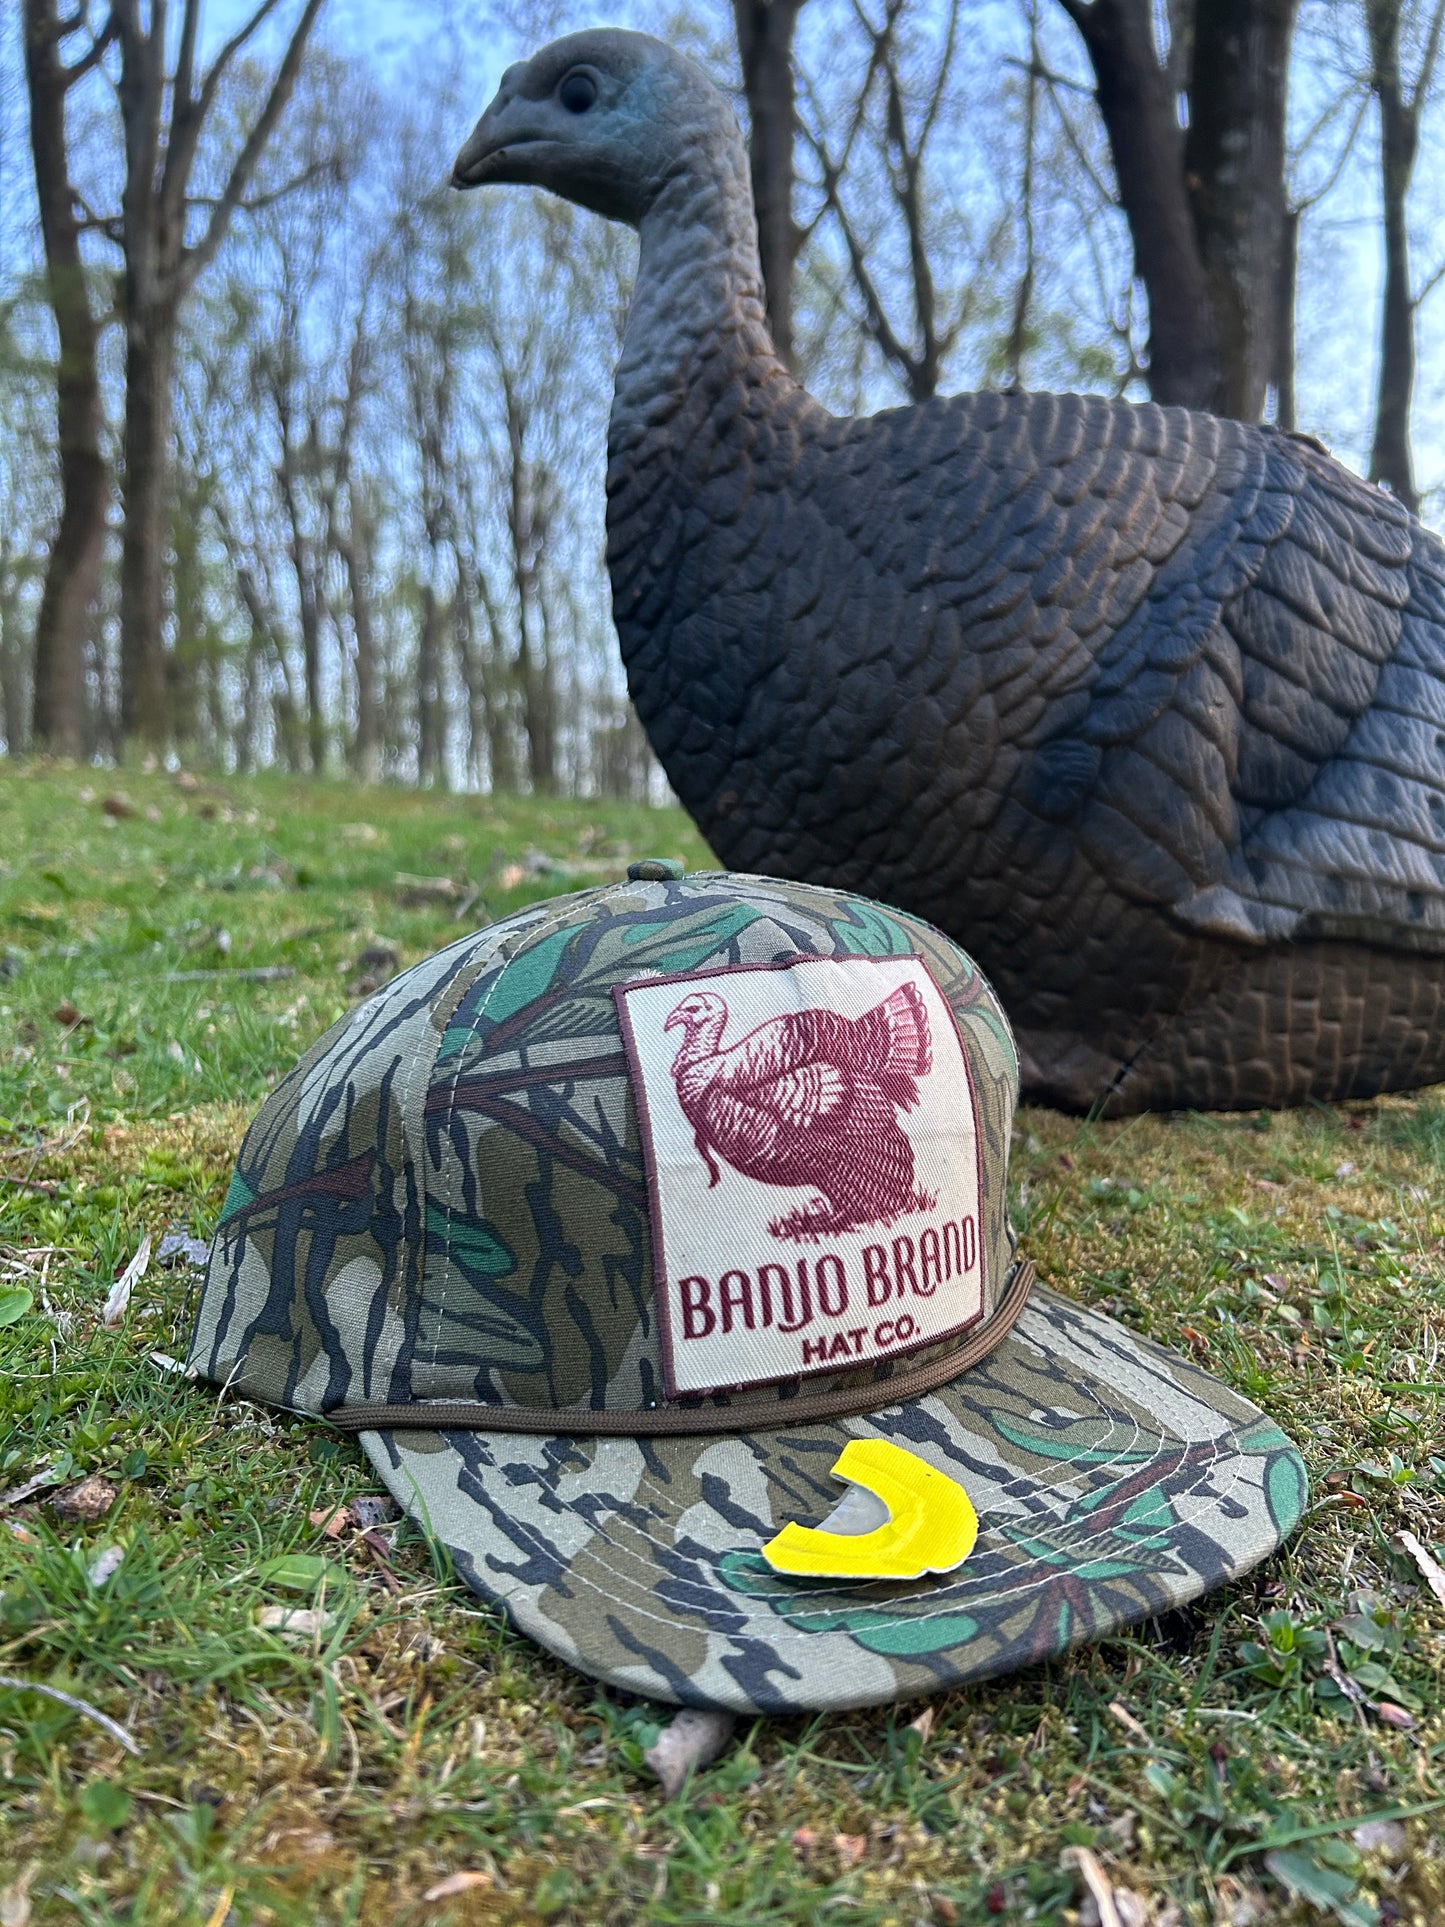 Banjo Brand Turkey hunting Mossy Oak ropebrim SnapBack hat